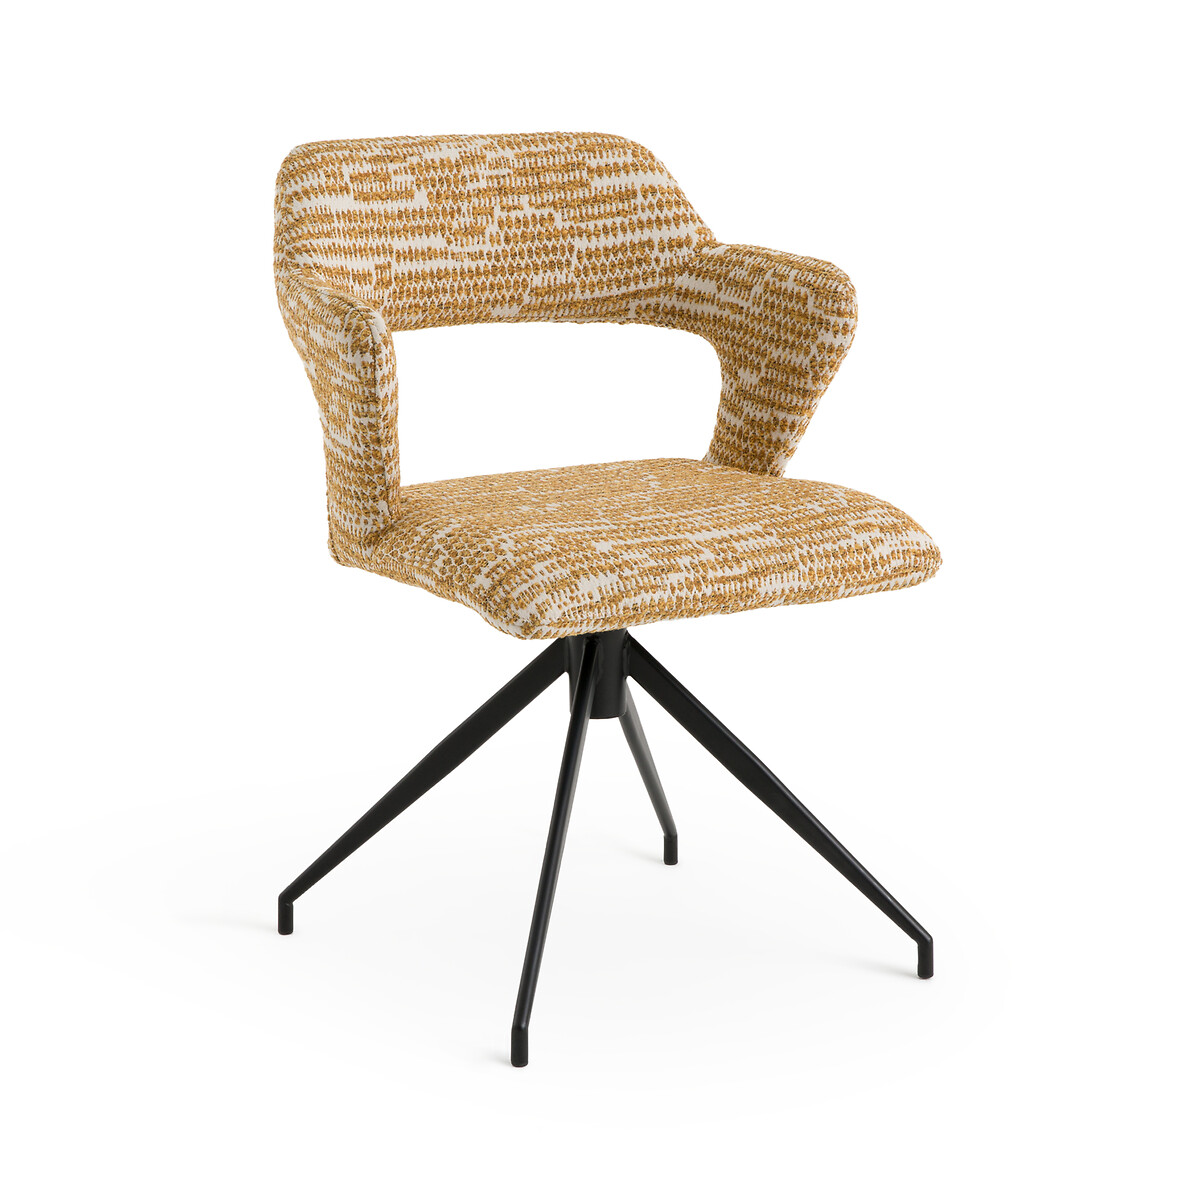 Кресло для столовой вращающееся Asyar единый размер желтый кресло барное вращающееся из плетеной ткани asyar единый размер бежевый